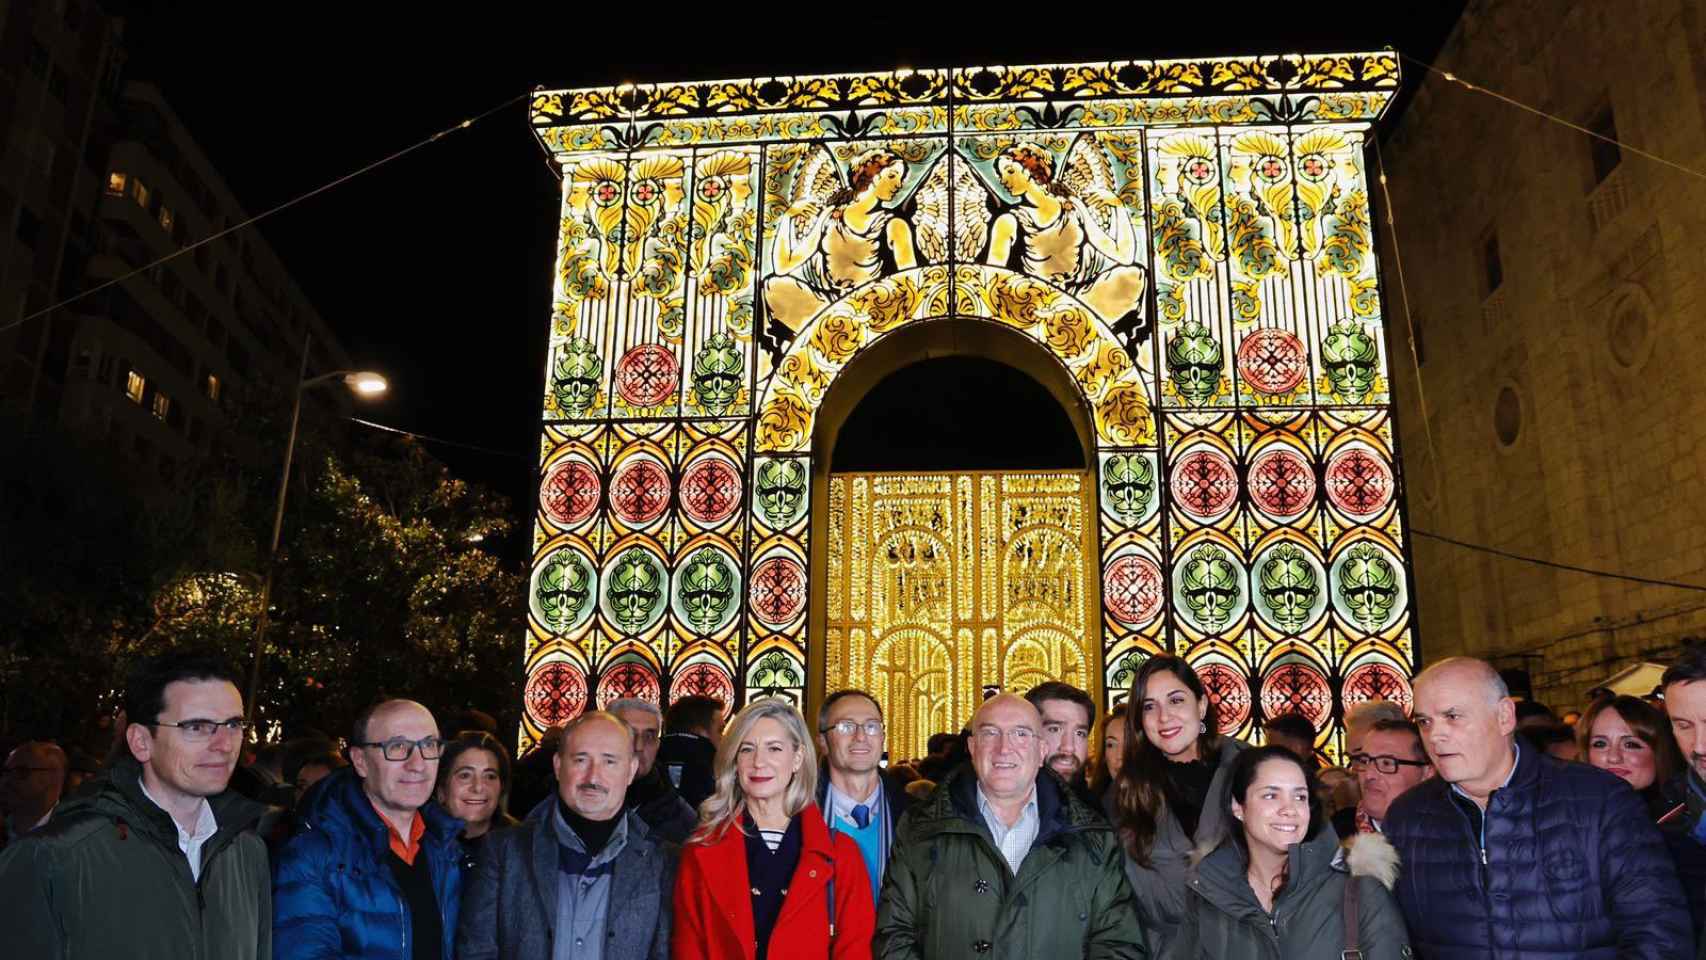 Inauguración de la iluminación navideña de Valladolid